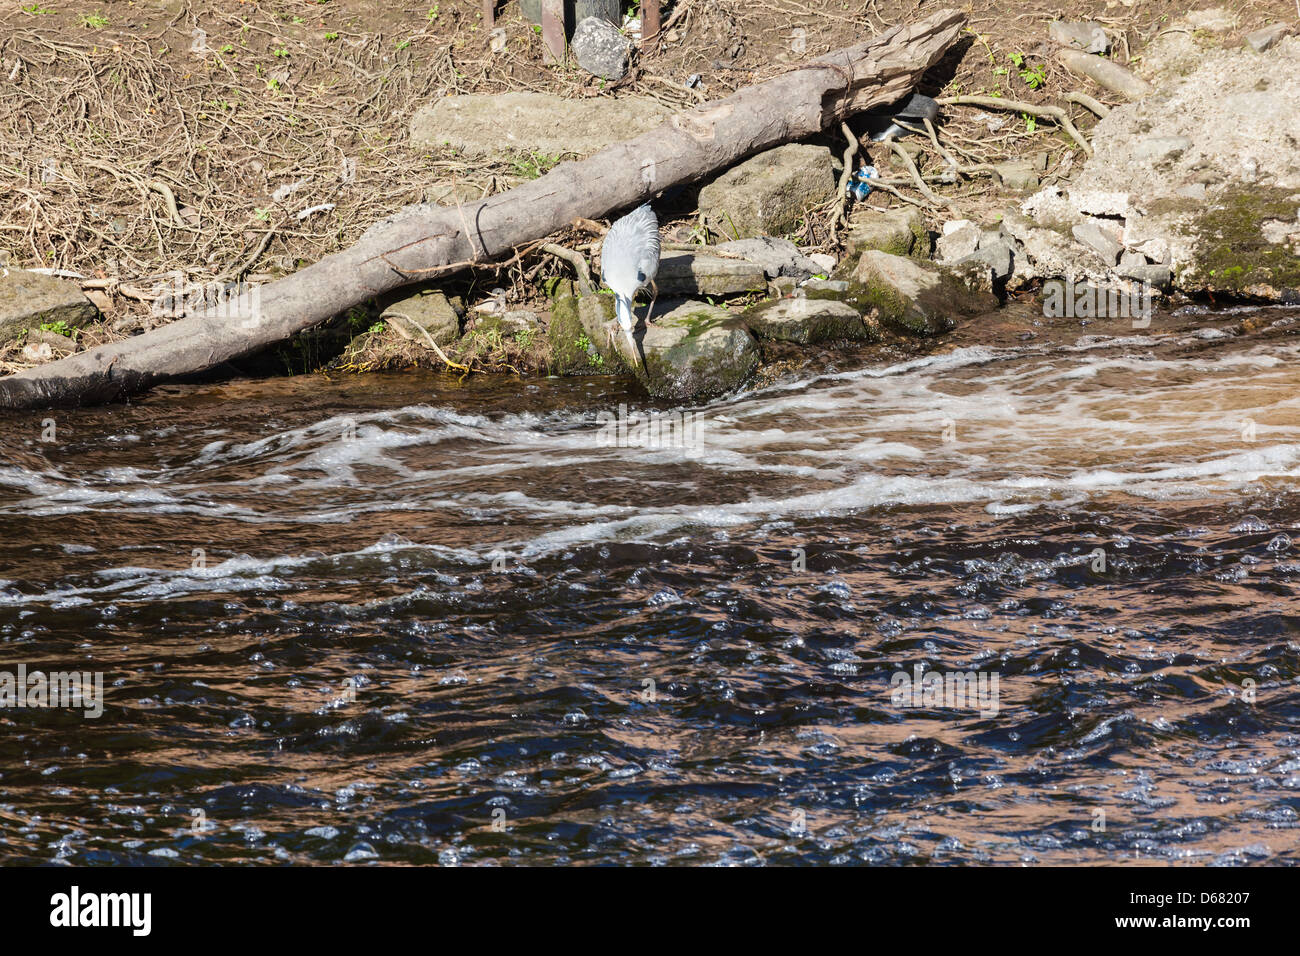 Un héron la pêche sur la rivière d'usure au niveau de la recherche, Durham weir la turbulence, vu de Framwelgate Waterside, County Durham, Royaume-Uni Banque D'Images